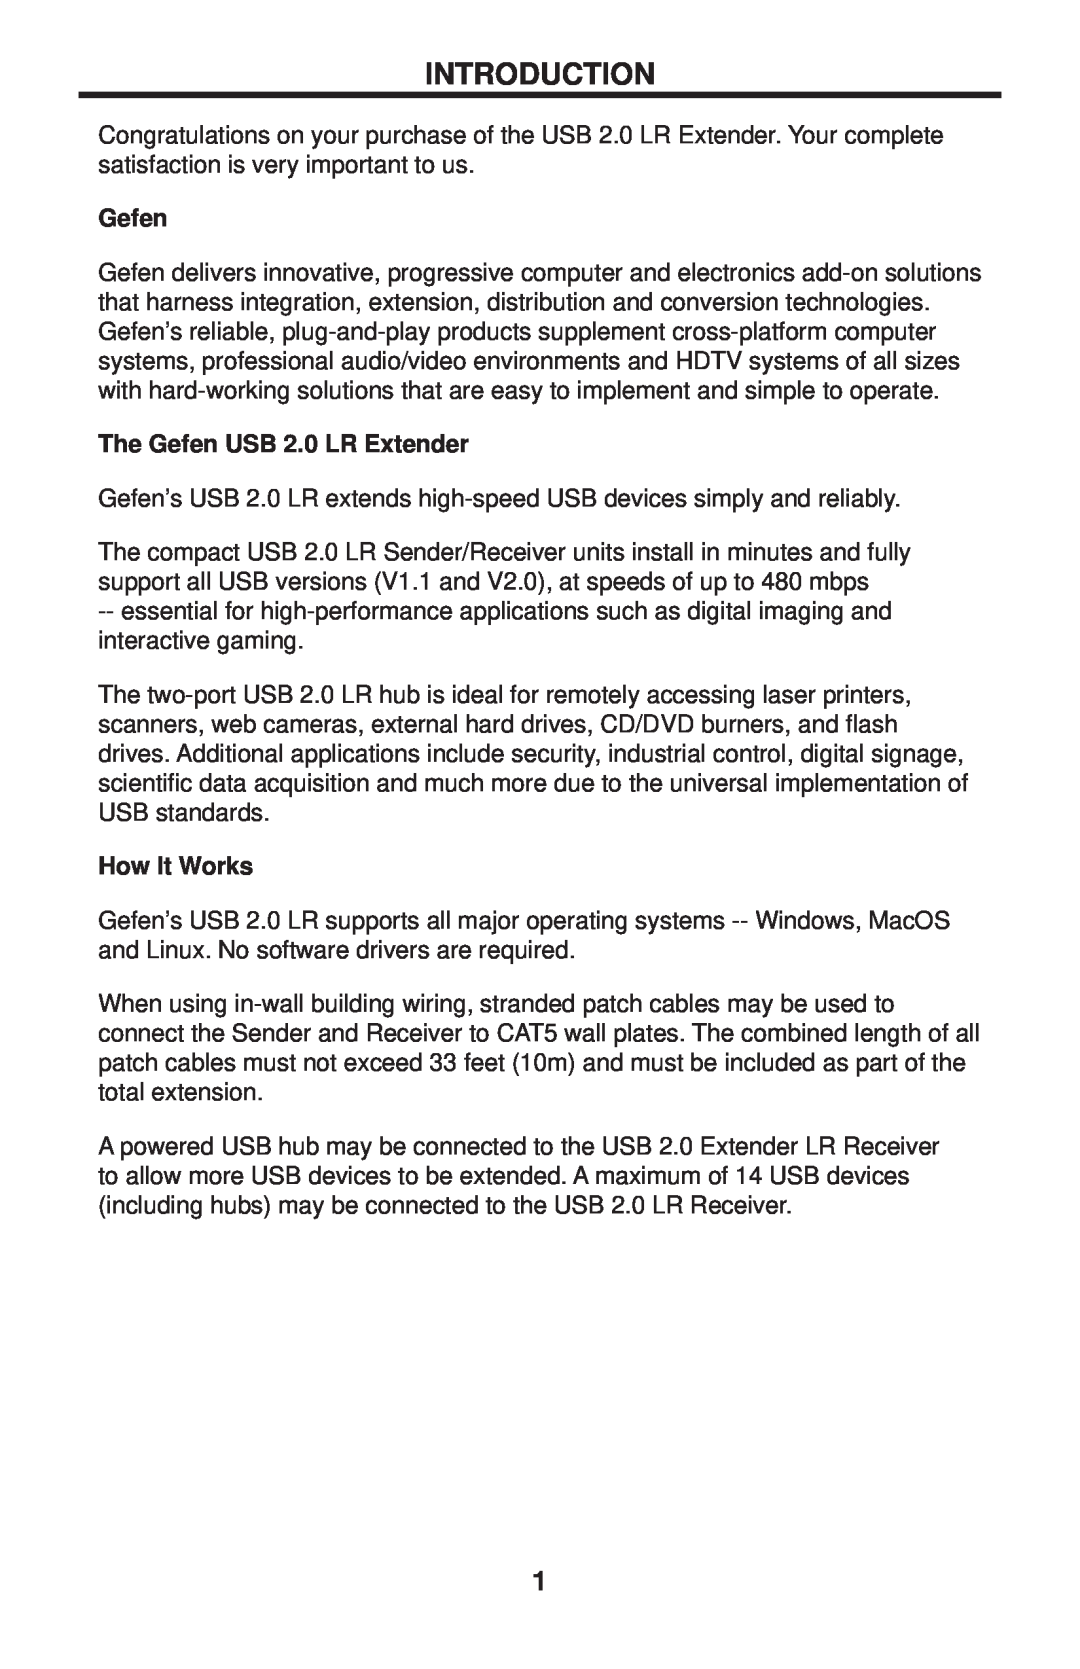 Gefen EXT-USB2.0-LR user manual Introduction, The Gefen USB 2.0 LR Extender, How It Works 